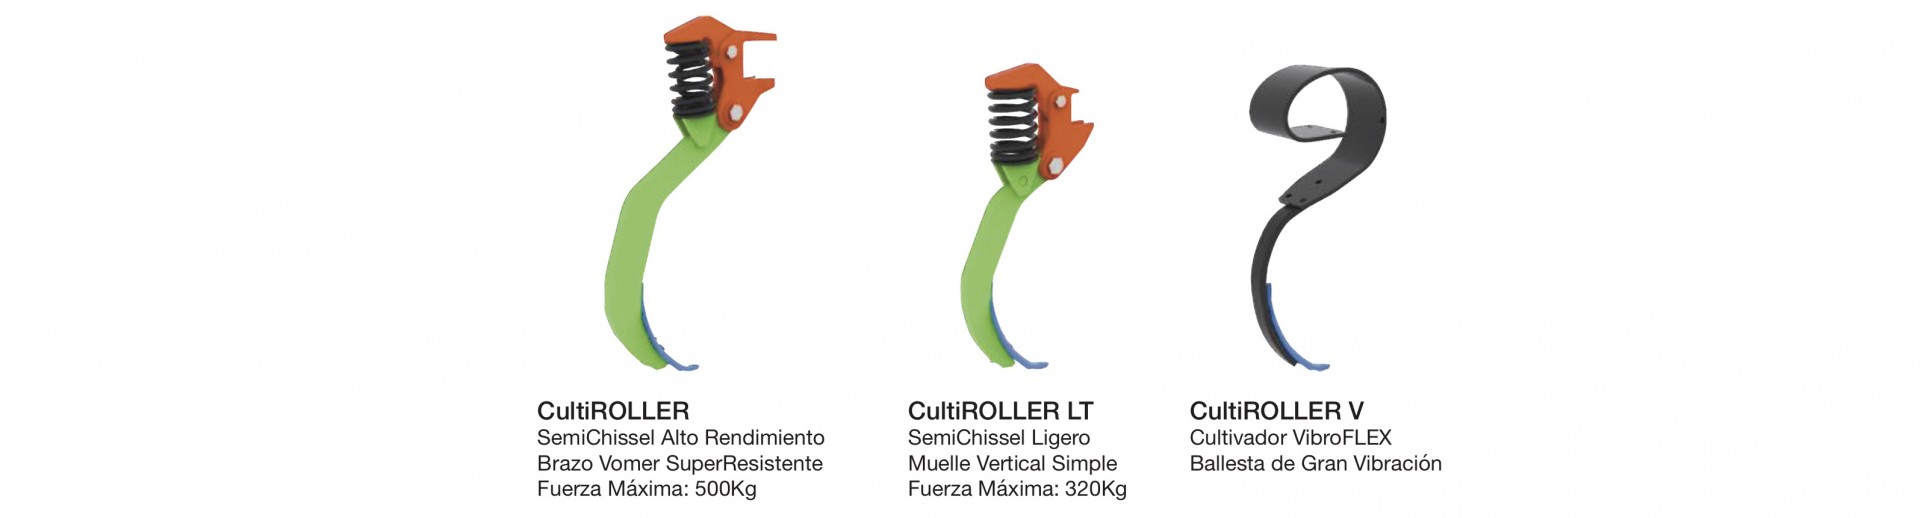 CULTI<b>ROLLER</b>  // Rodillo+Cultivador 16